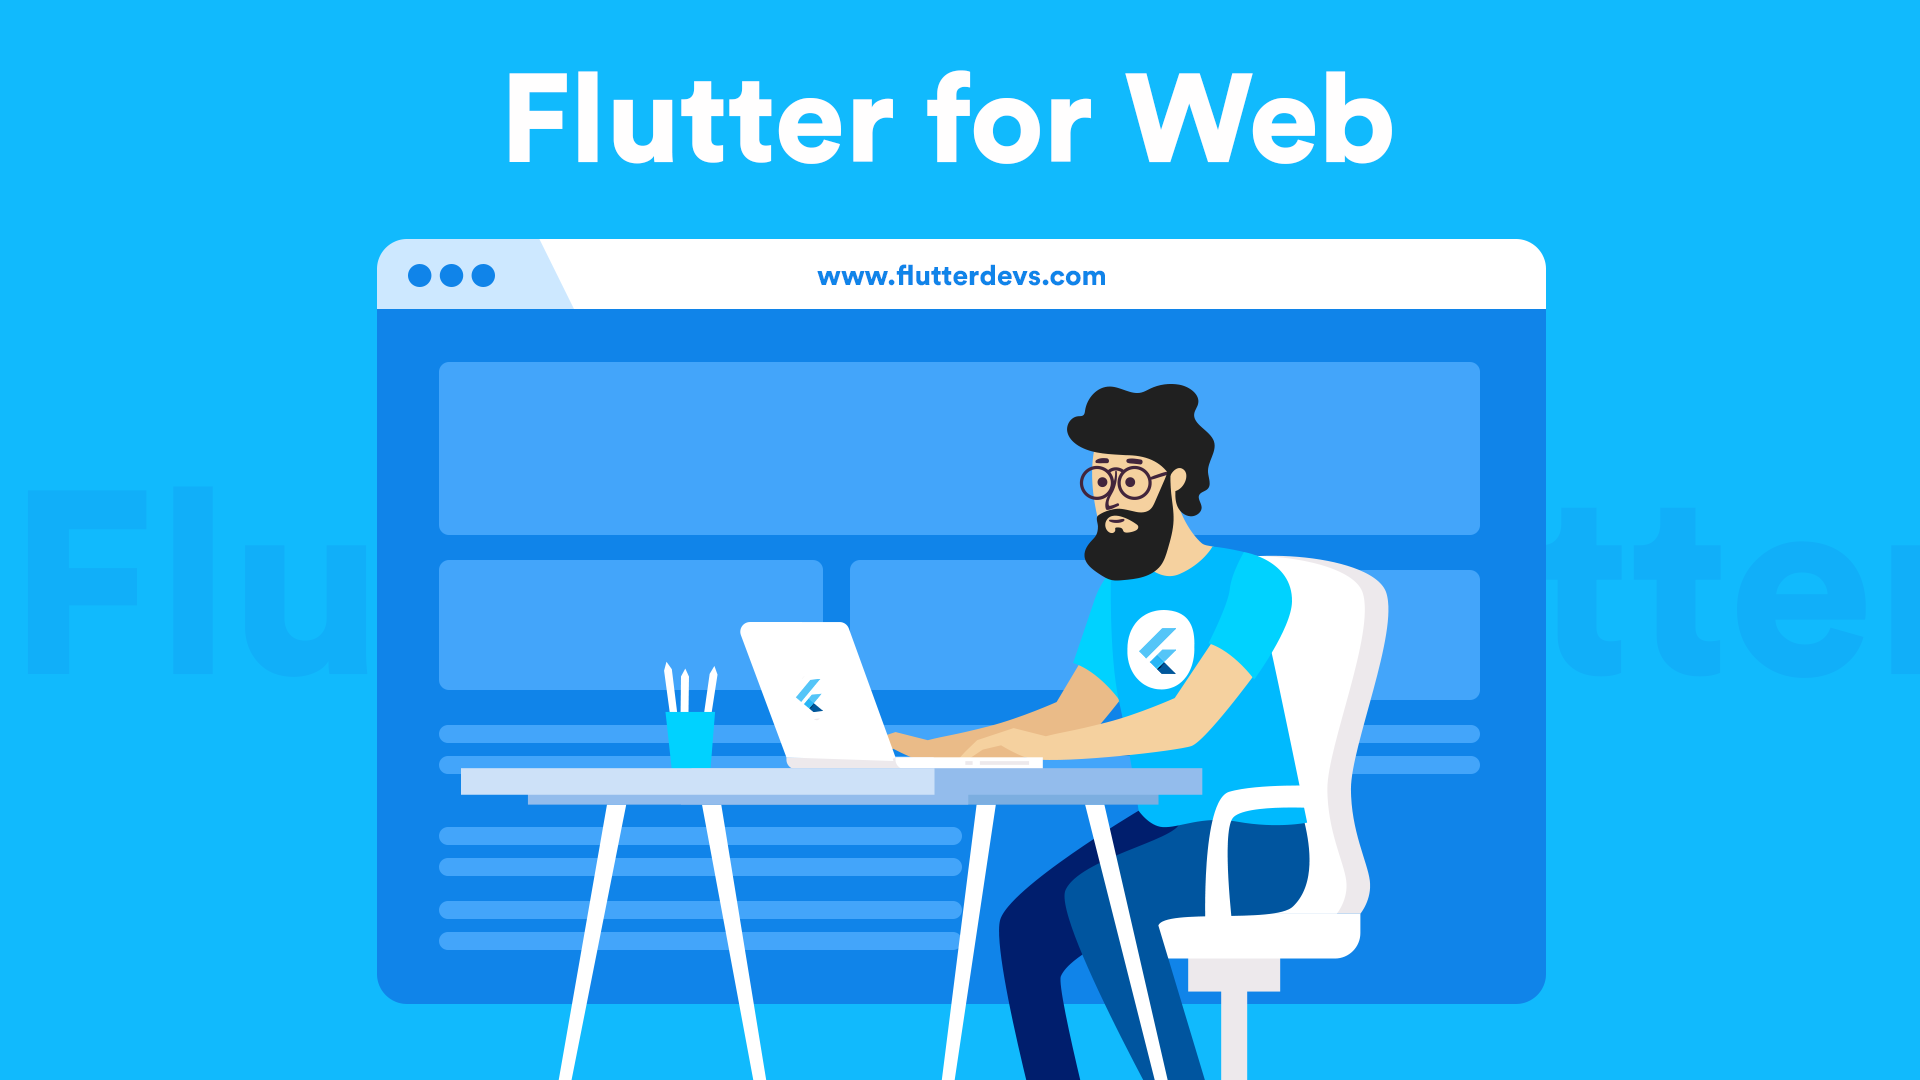 Flutter Web 稳定版本发布至今也有一年多了，经过这一年多的发展，今天就让我们来看看作为大前端时代的乱流，Flutter Web 究竟有什么不同之处，本篇分享主要内容是目前 Flutter 下少有较为全面的 Web 内容。